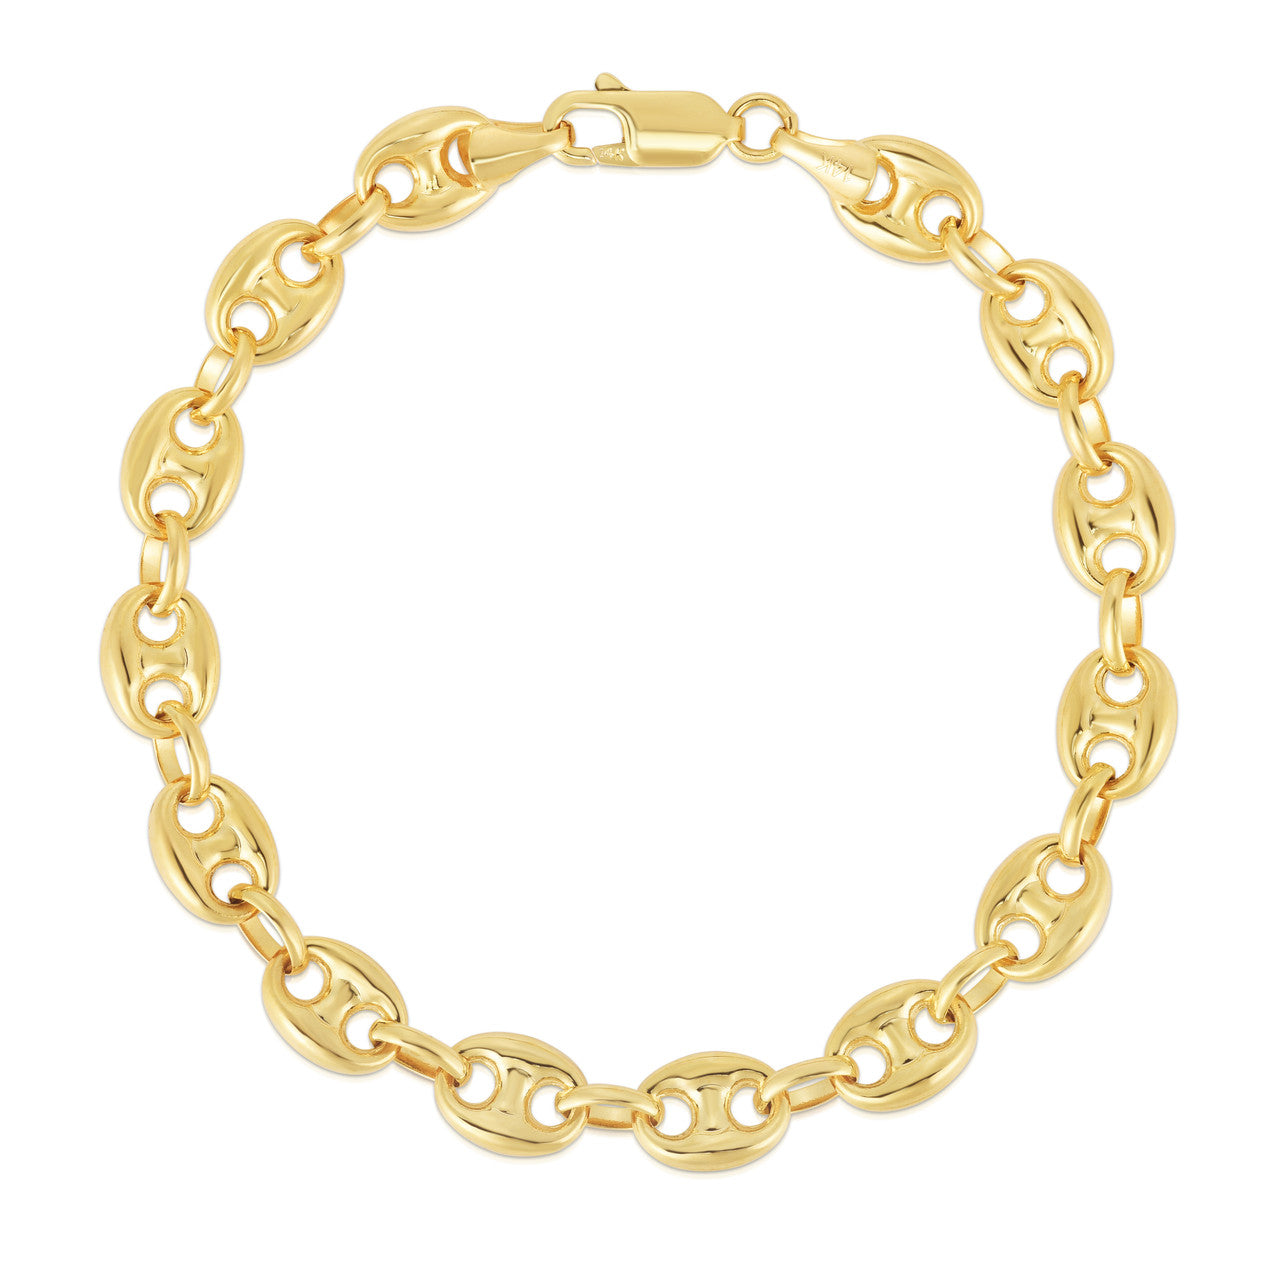 Gold Mariner Bracelet, Mariner Link Bracelet, Puffed Mariner Bracelet, Gold  Chunky Bracelet, Gold Link Bracelet, Gold Chain Bracelet, Gifts - Etsy  Denmark